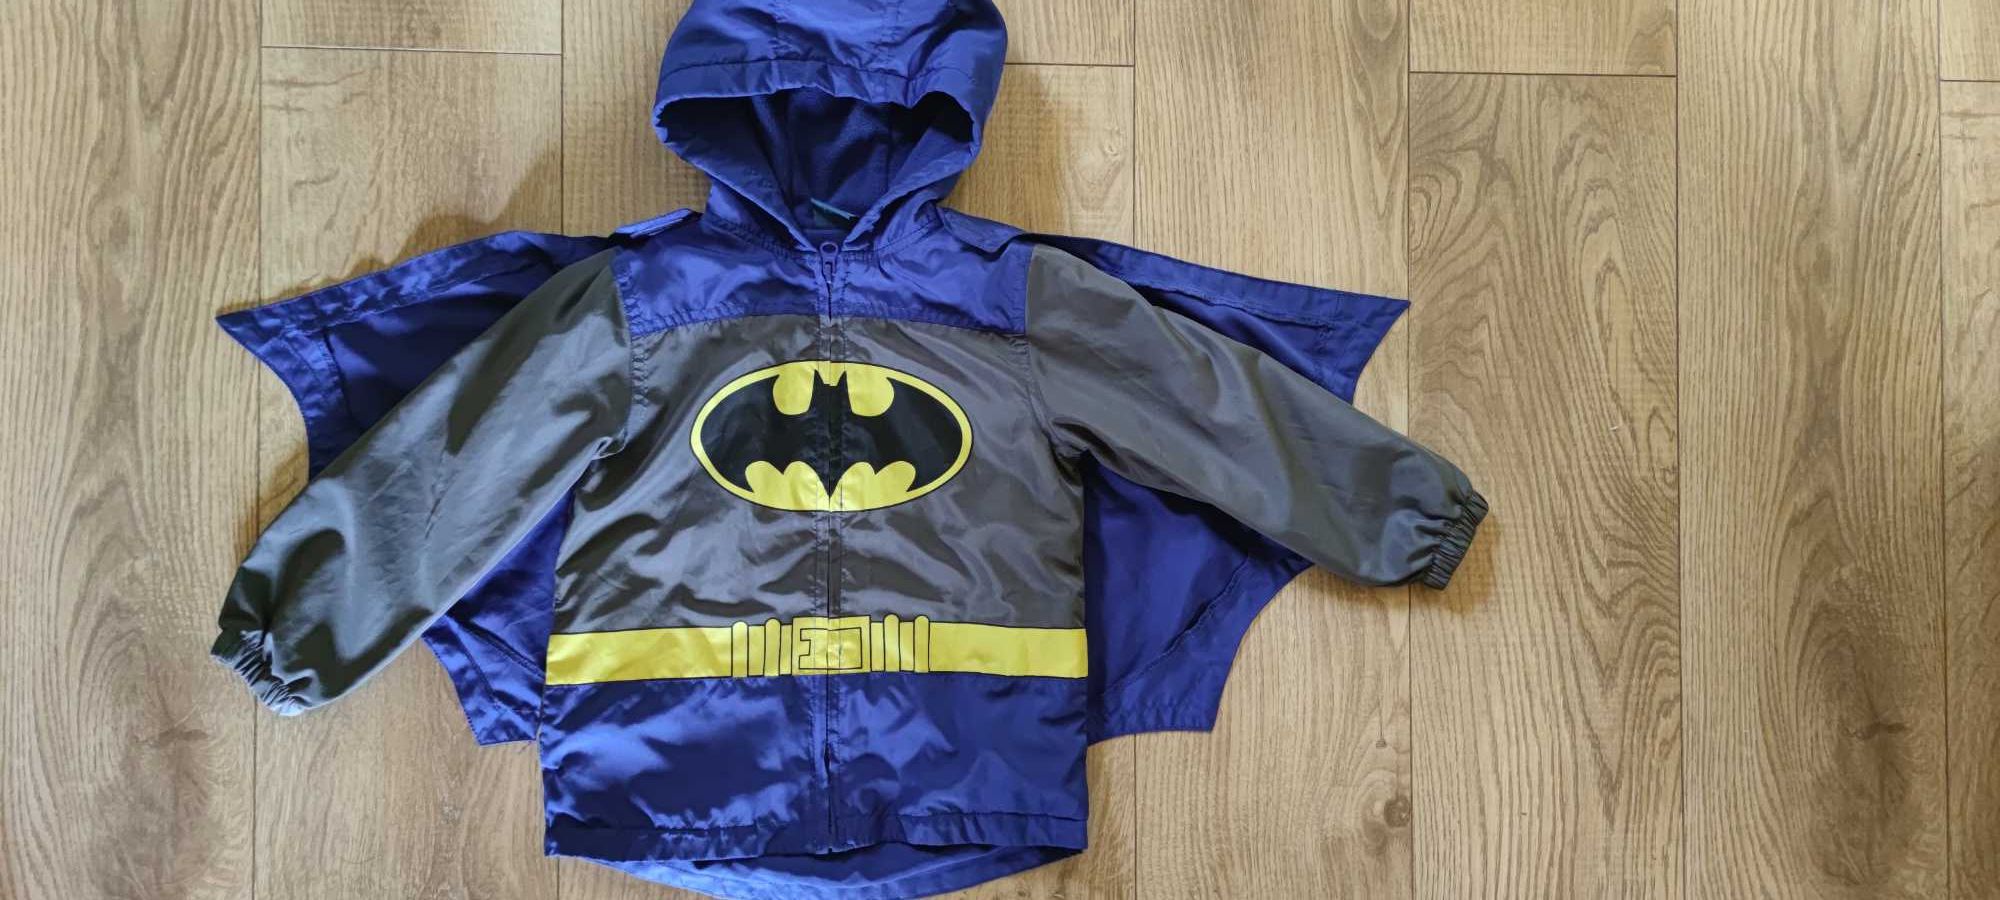 Jak nowa 98 104 Batman super kurtka wiosenna dla chłopca z peleryną